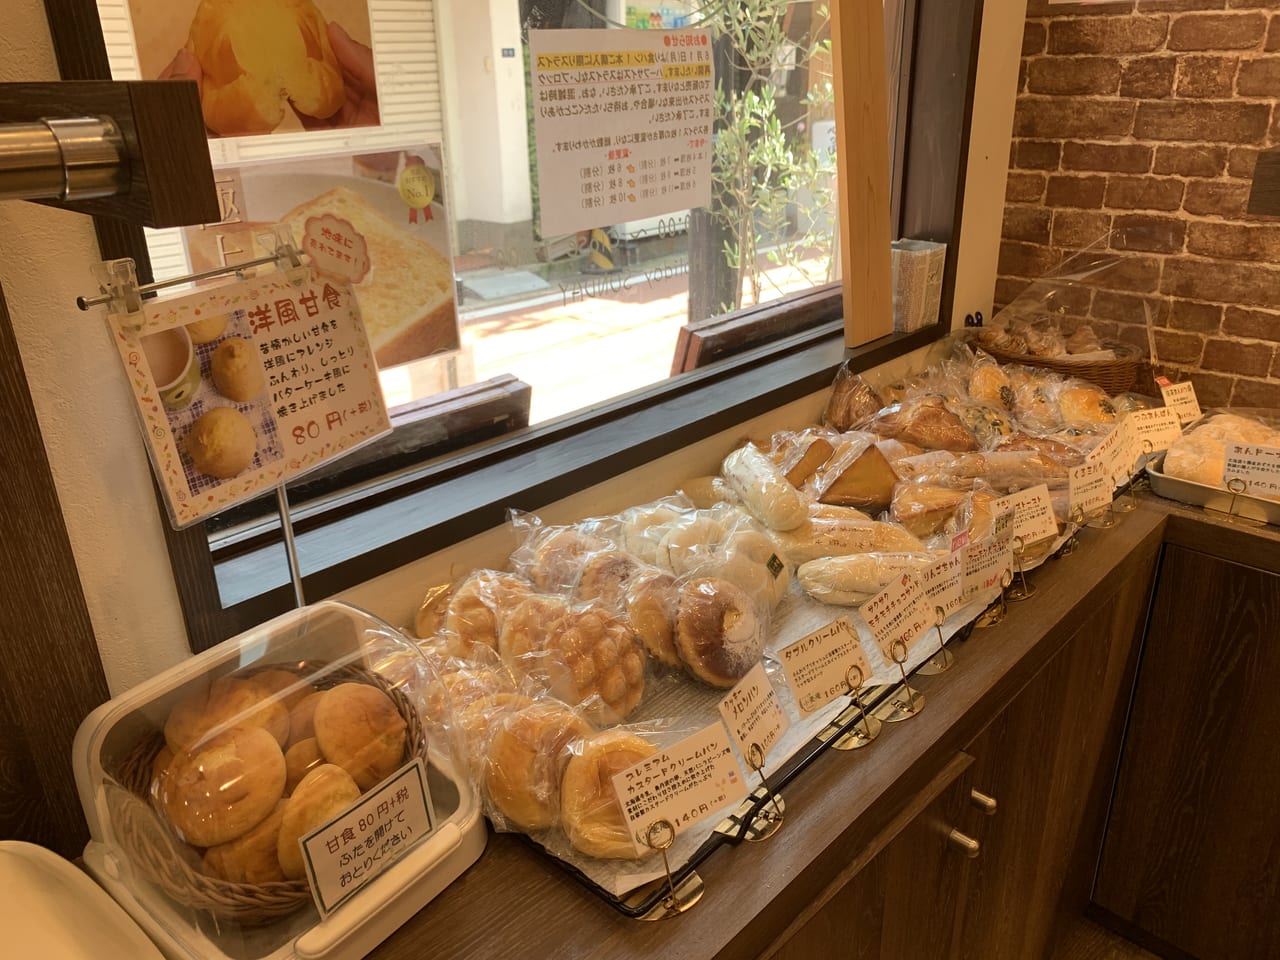 神戸市垂水区 垂水の人気パン屋さん 小麦庵 ケンミンショーでも話題になった天然酵母の食パンが有名 号外net 神戸市垂水区 須磨区